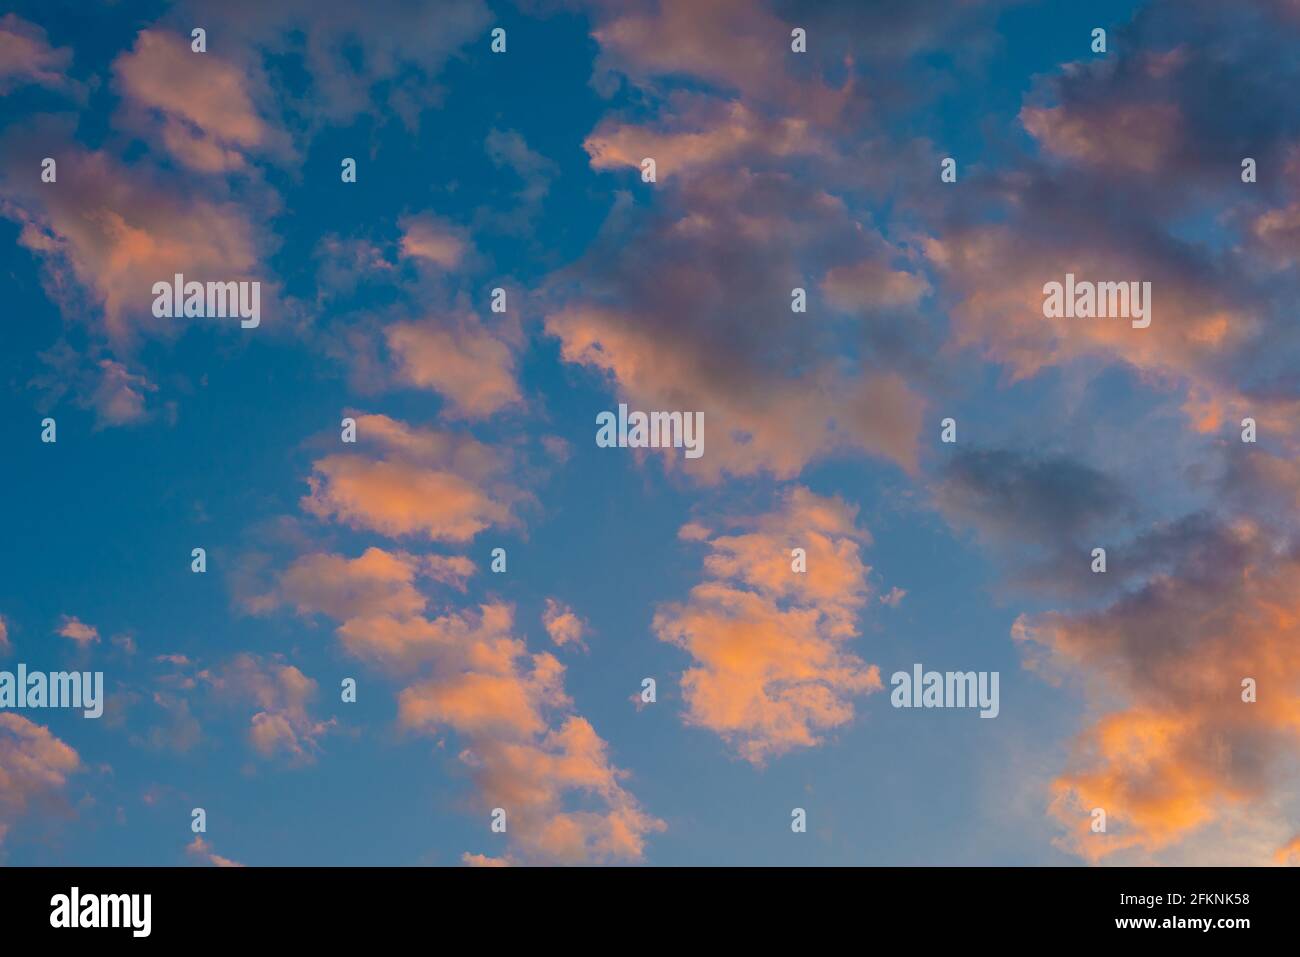 ciel nuageux au lever du soleil avec formation de cumulus rose noir et blanc dans un ciel bleu pastel. Image d'arrière-plan du coucher ou du lever du soleil Banque D'Images